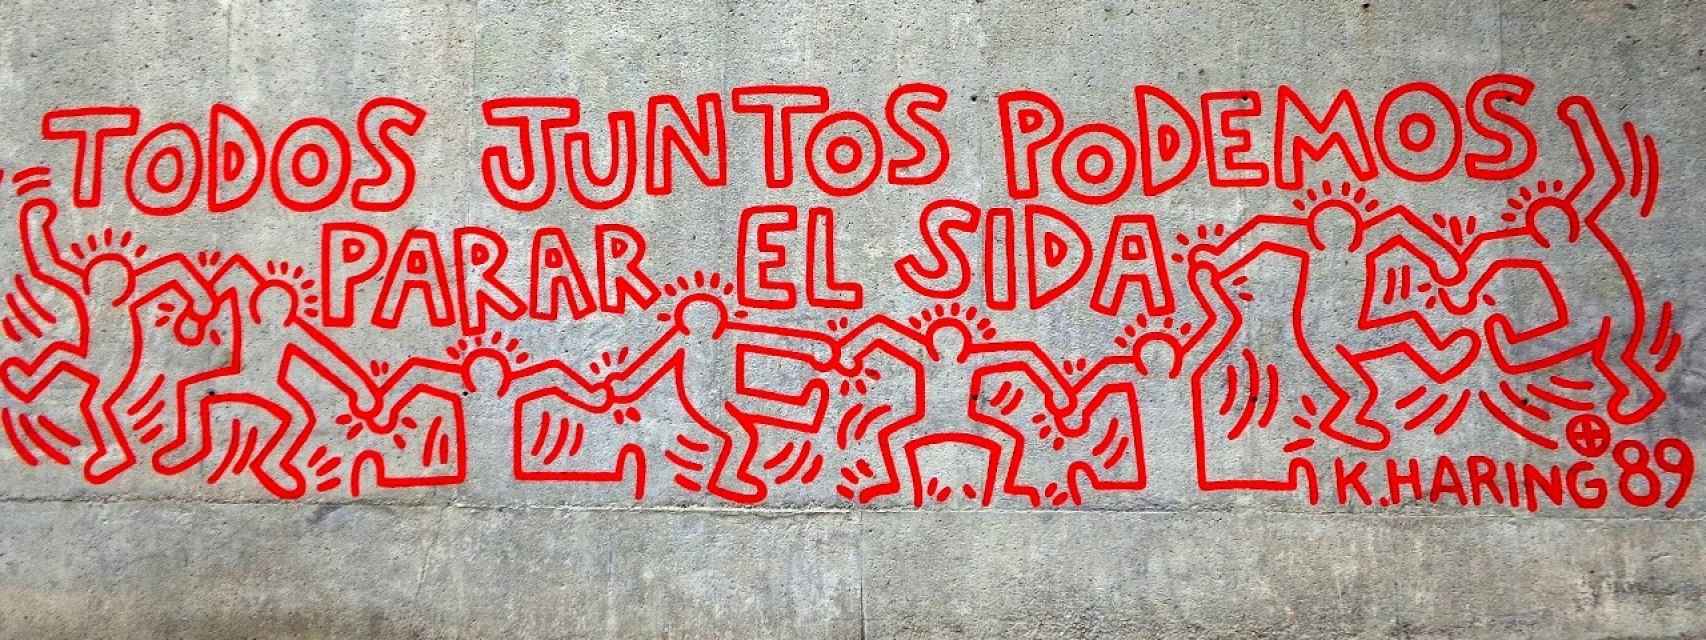 Mural de Haring en Barcelona.